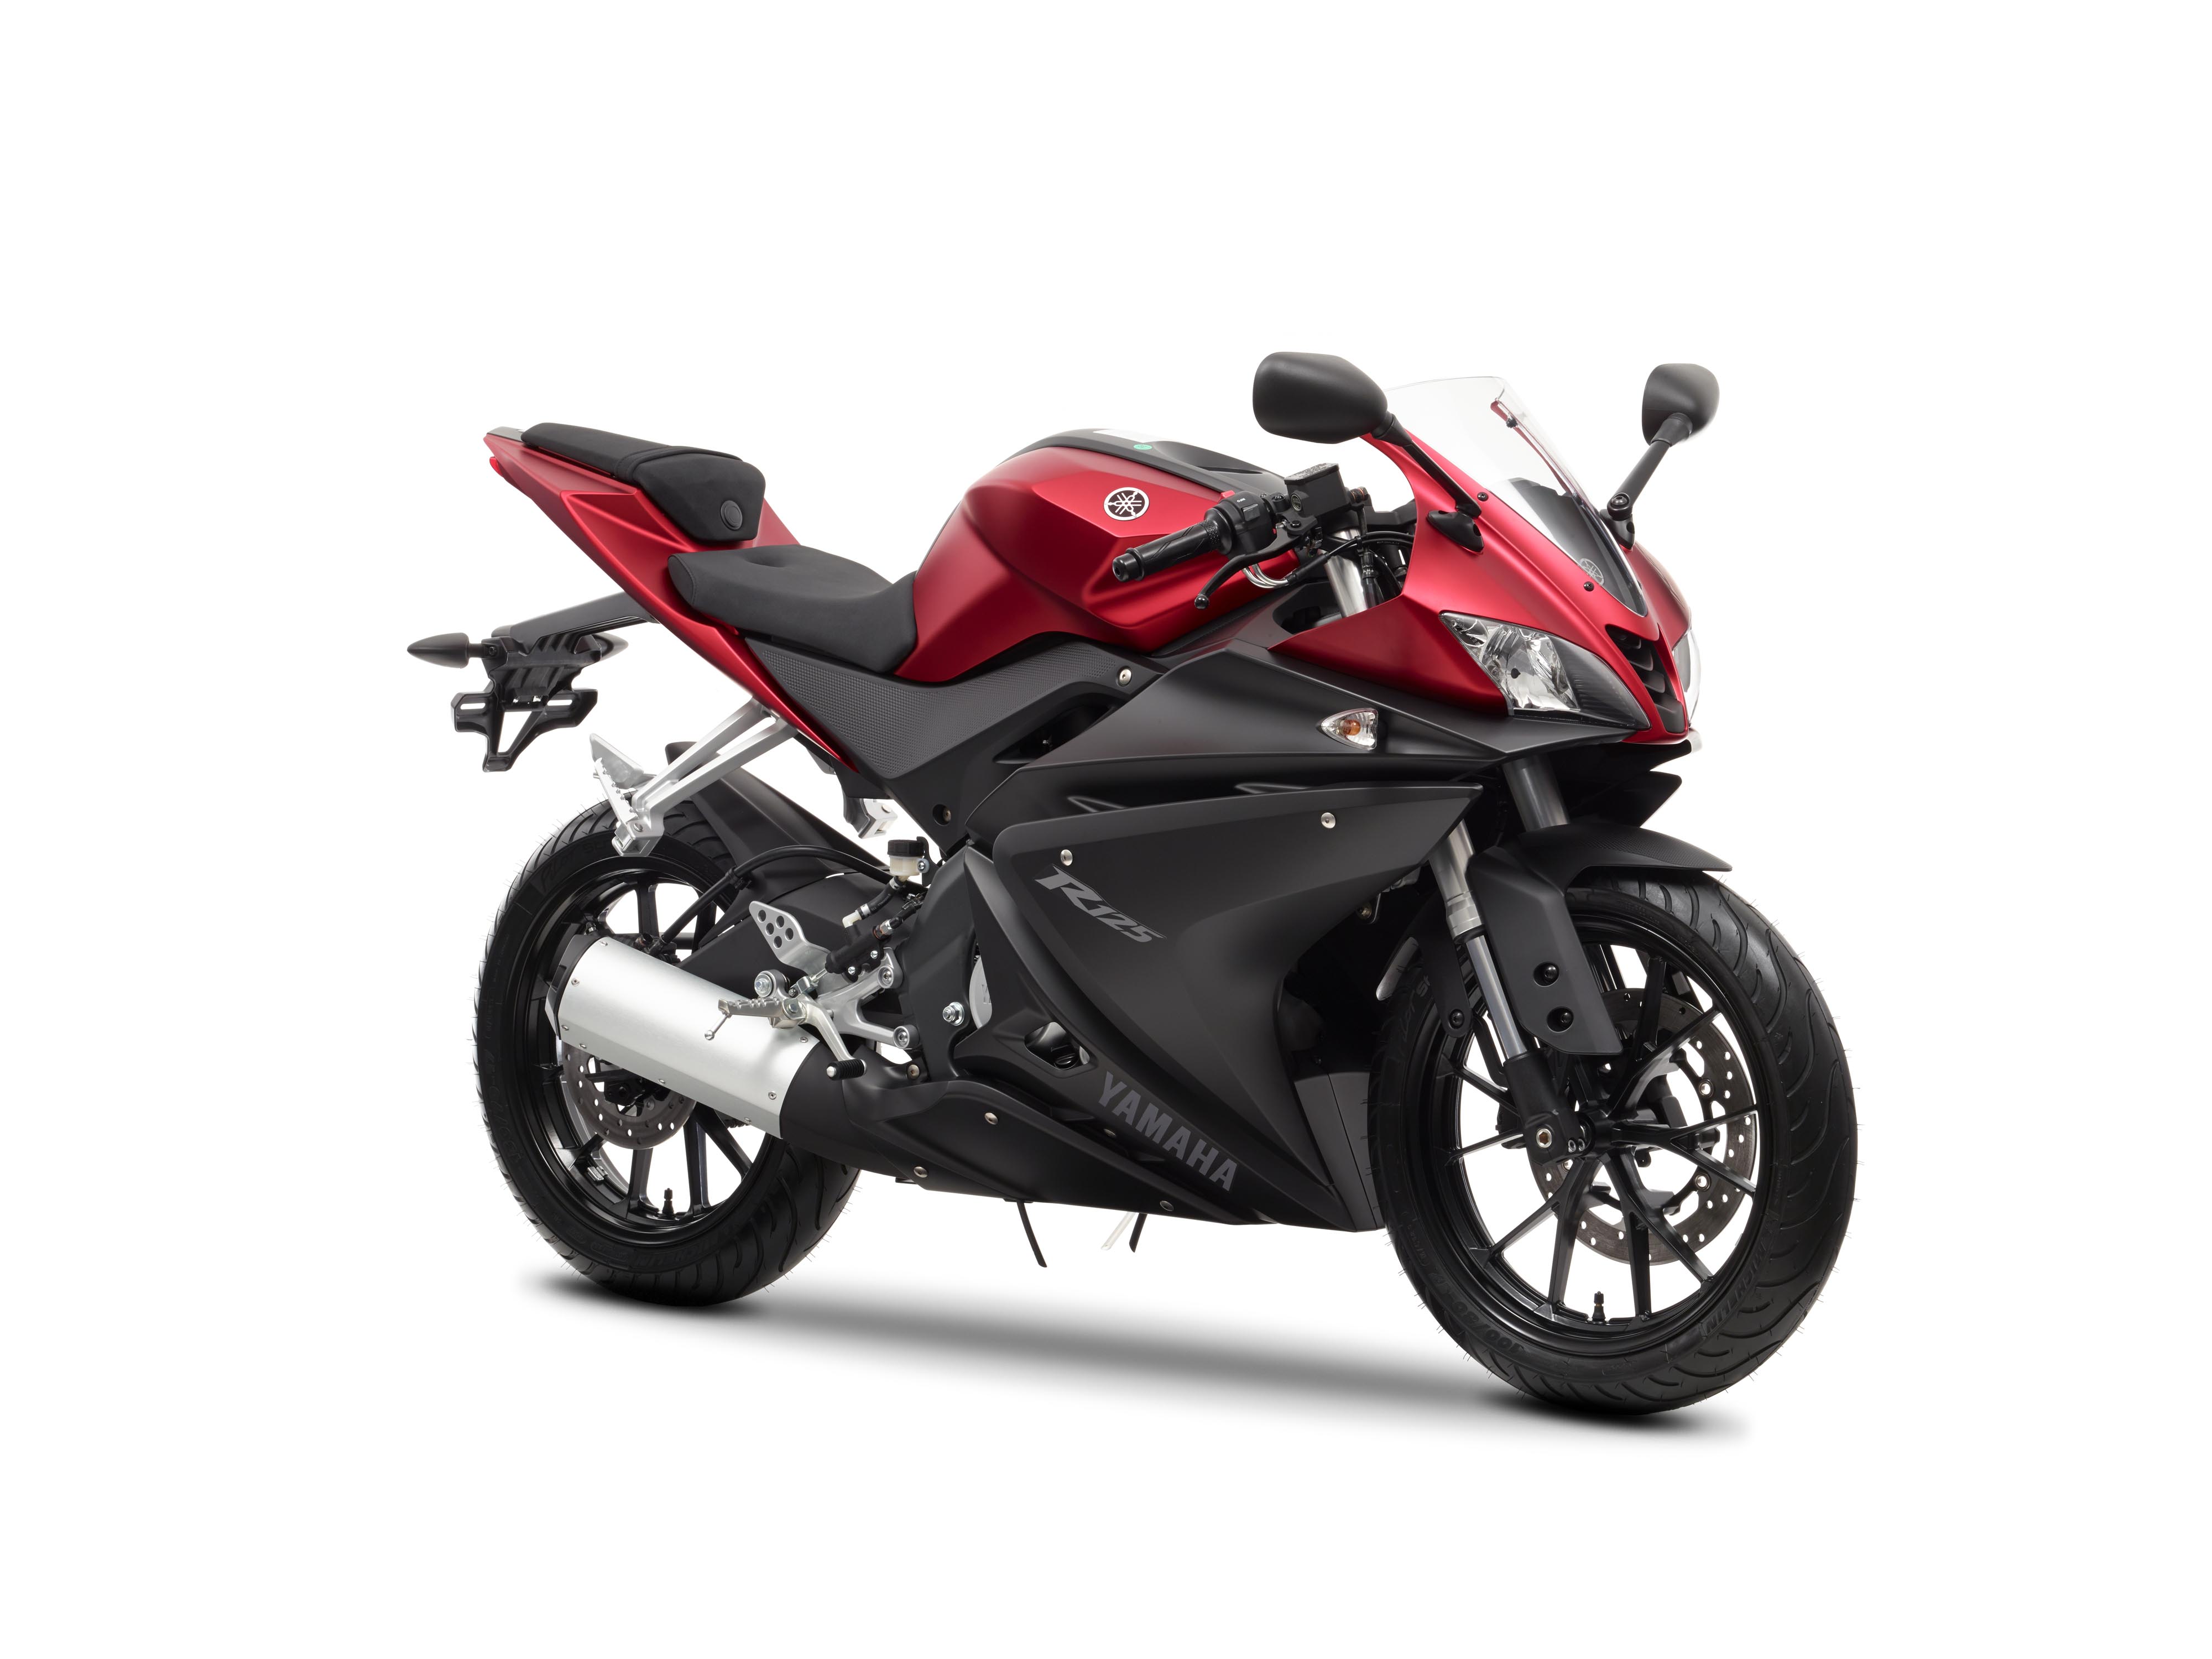 Updated 2014 Yamaha YZF-R125 revealed